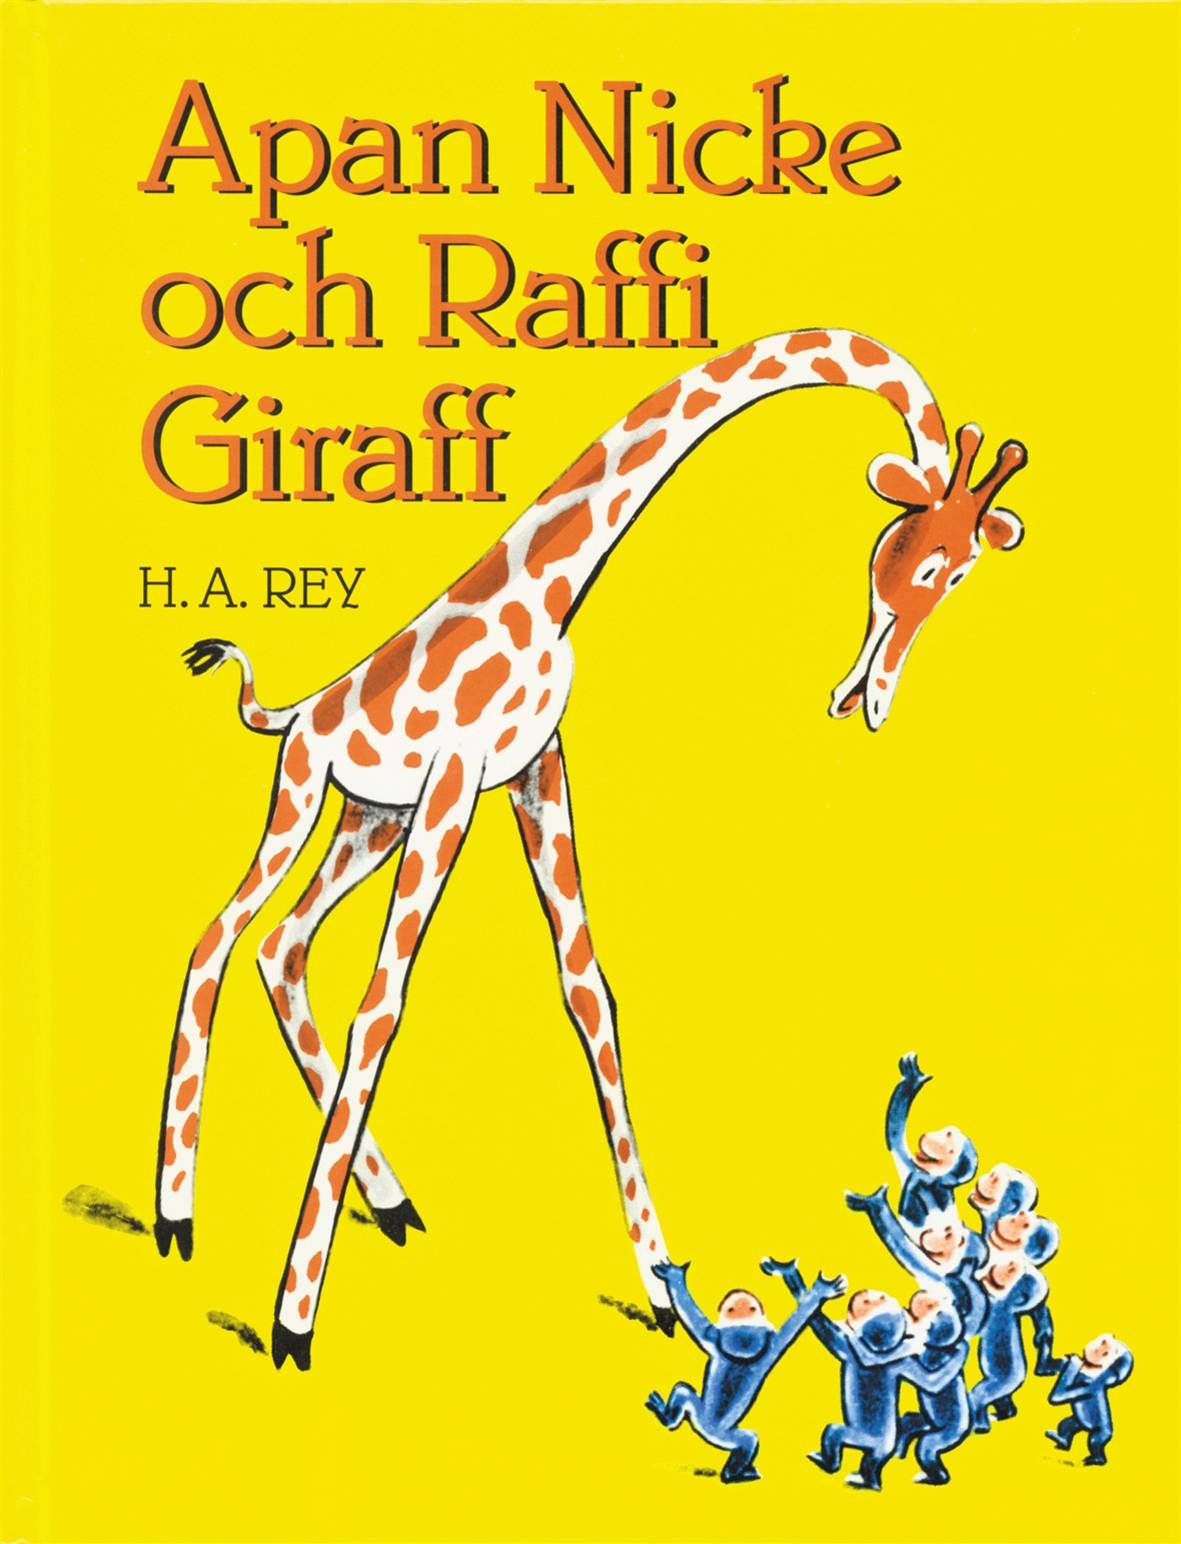 Apan Nicke och Raffi Giraff